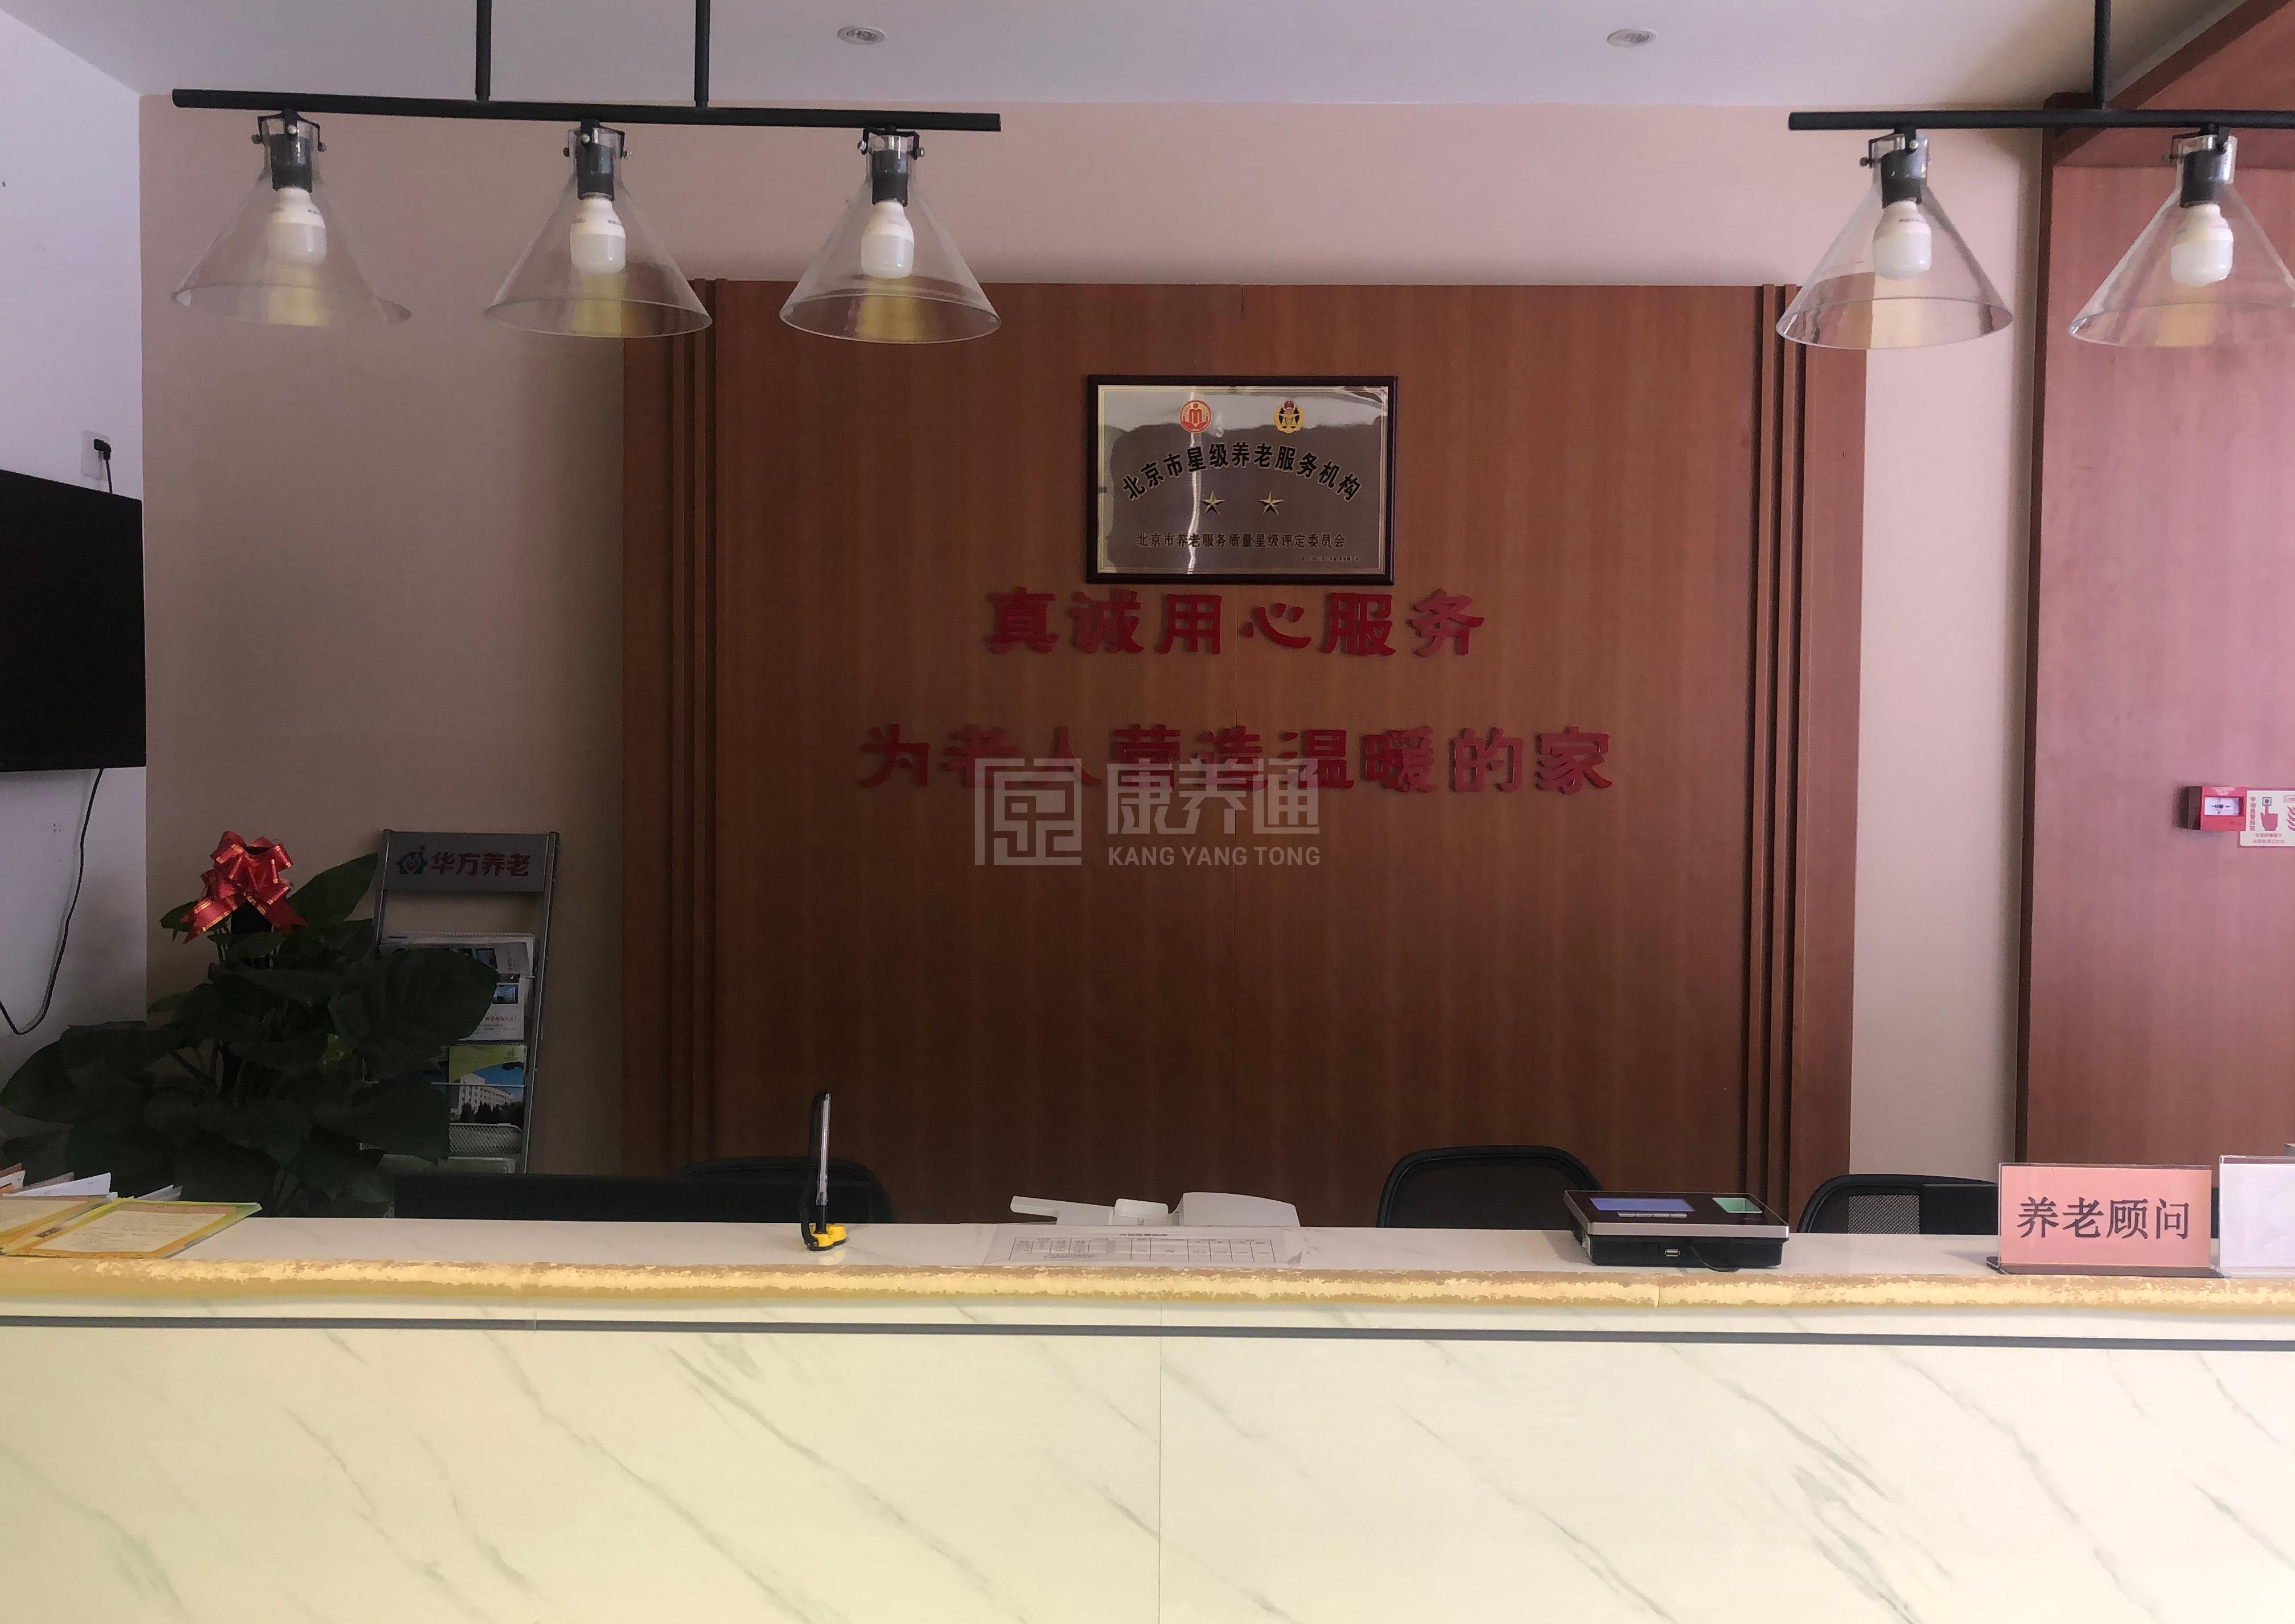 北京市西城区月坛街道华方养老照料中心服务项目图4让长者主动而自立地生活